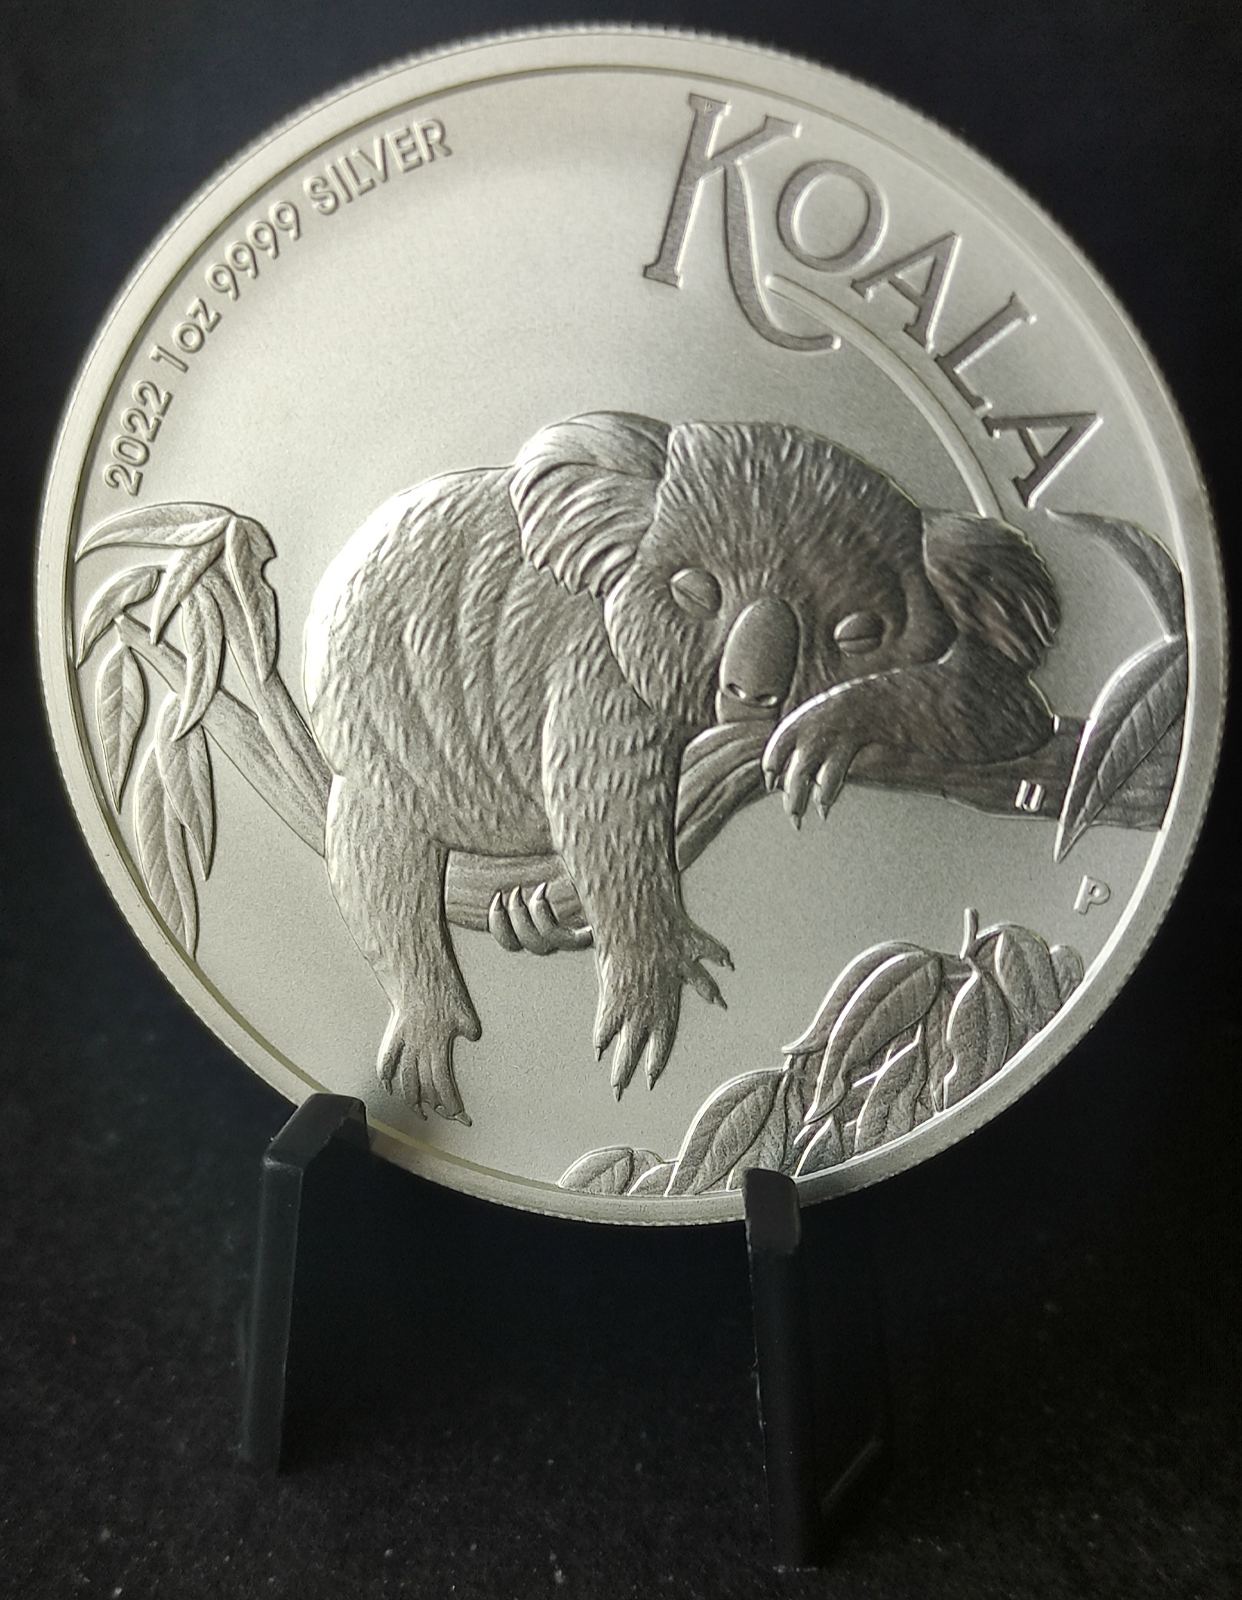 2022 Australia Koala 1 oz Silver Coin BU in Capsule